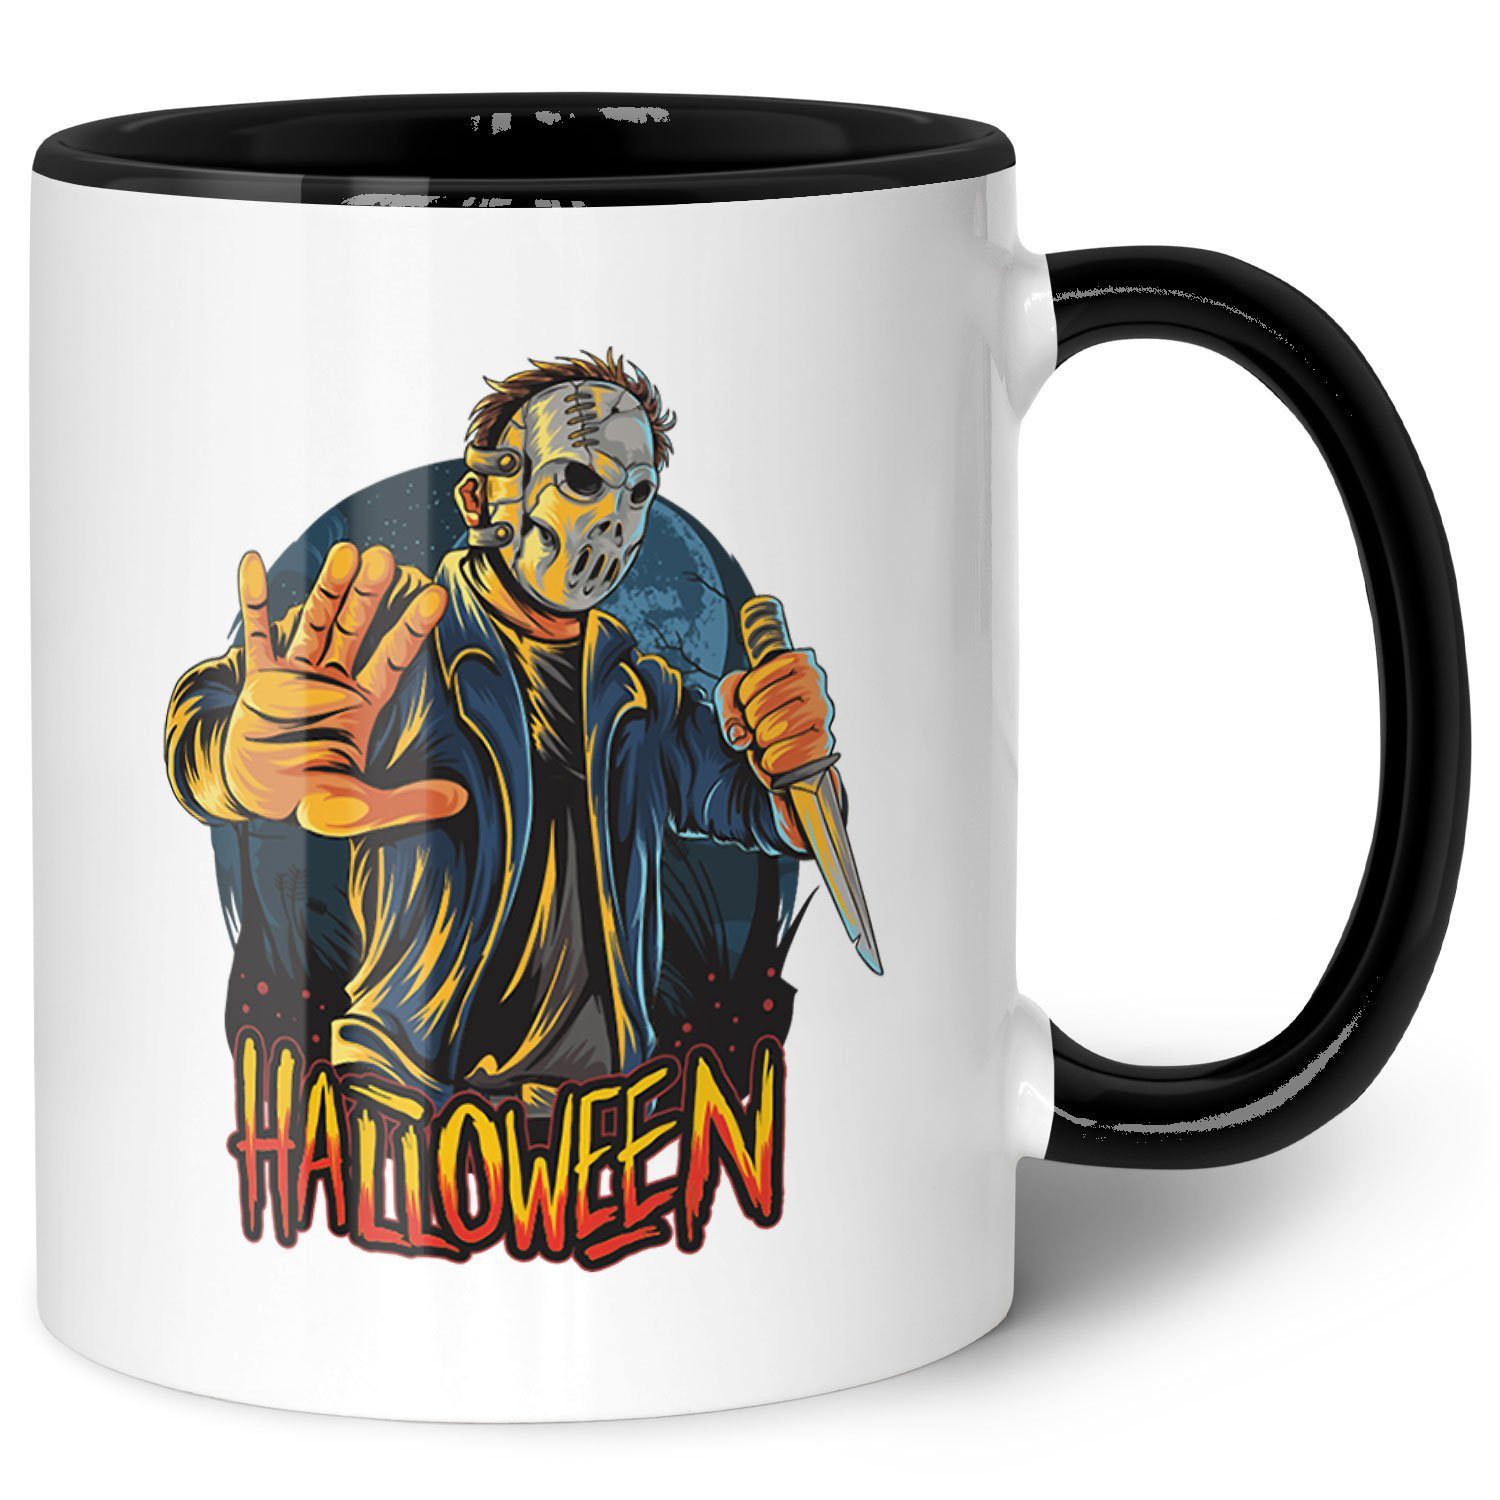 GRAVURZEILE Tasse mit Motiv - Halloween Slasher Design - Geschenk -, Keramik